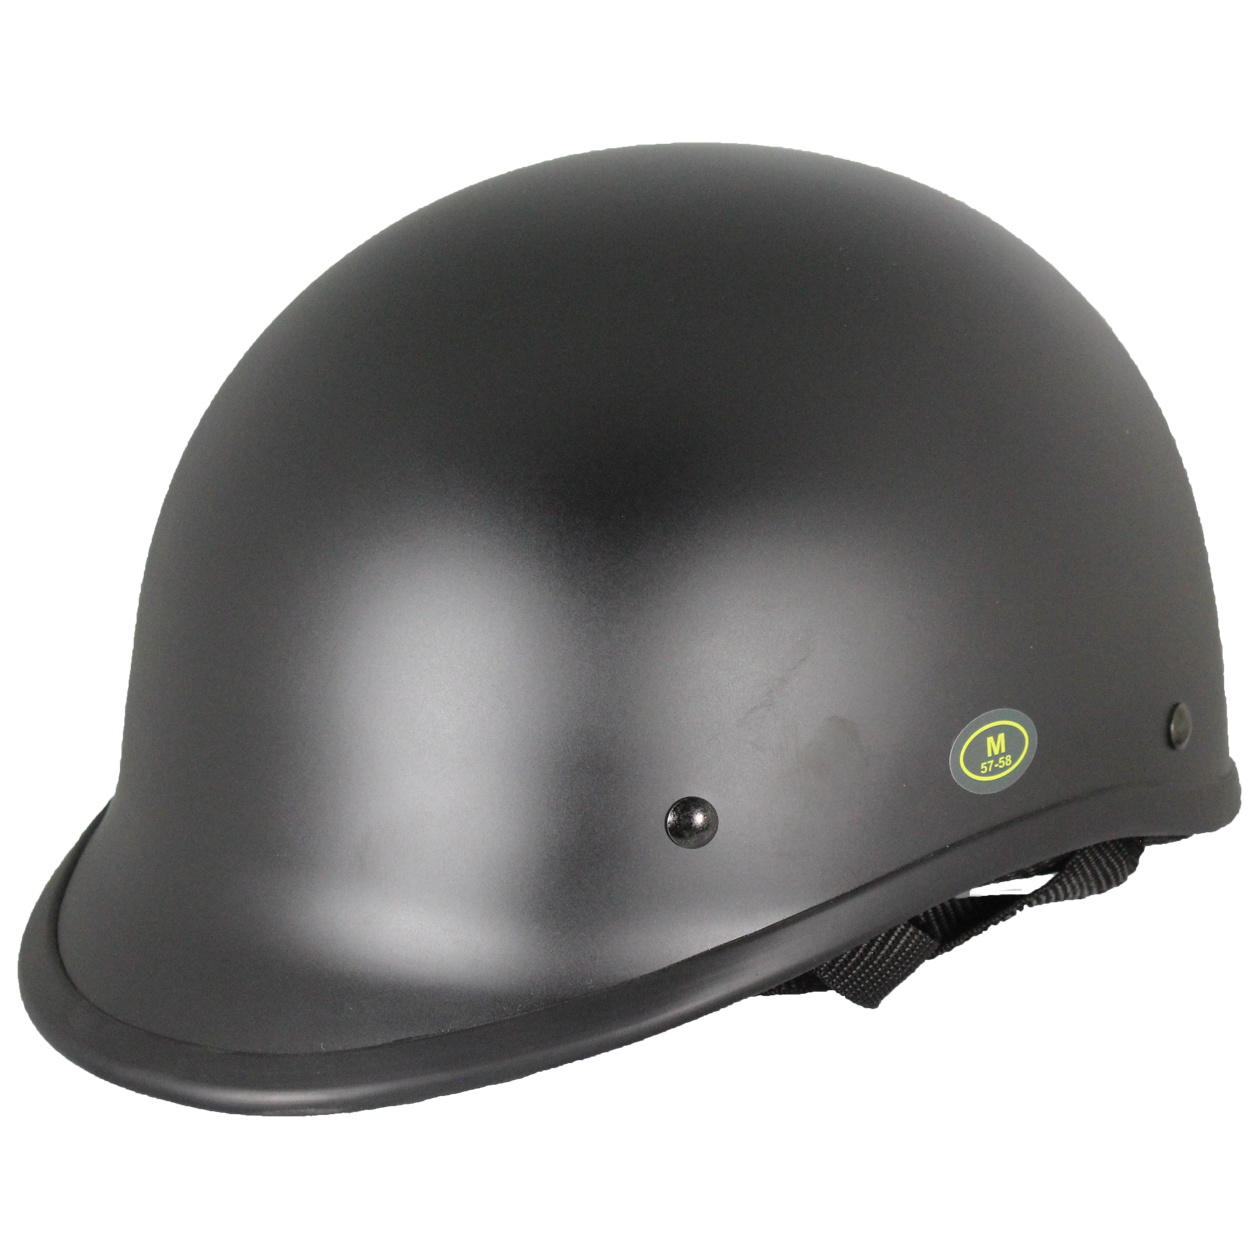 West Coast Leather Black Peak Half Helmet